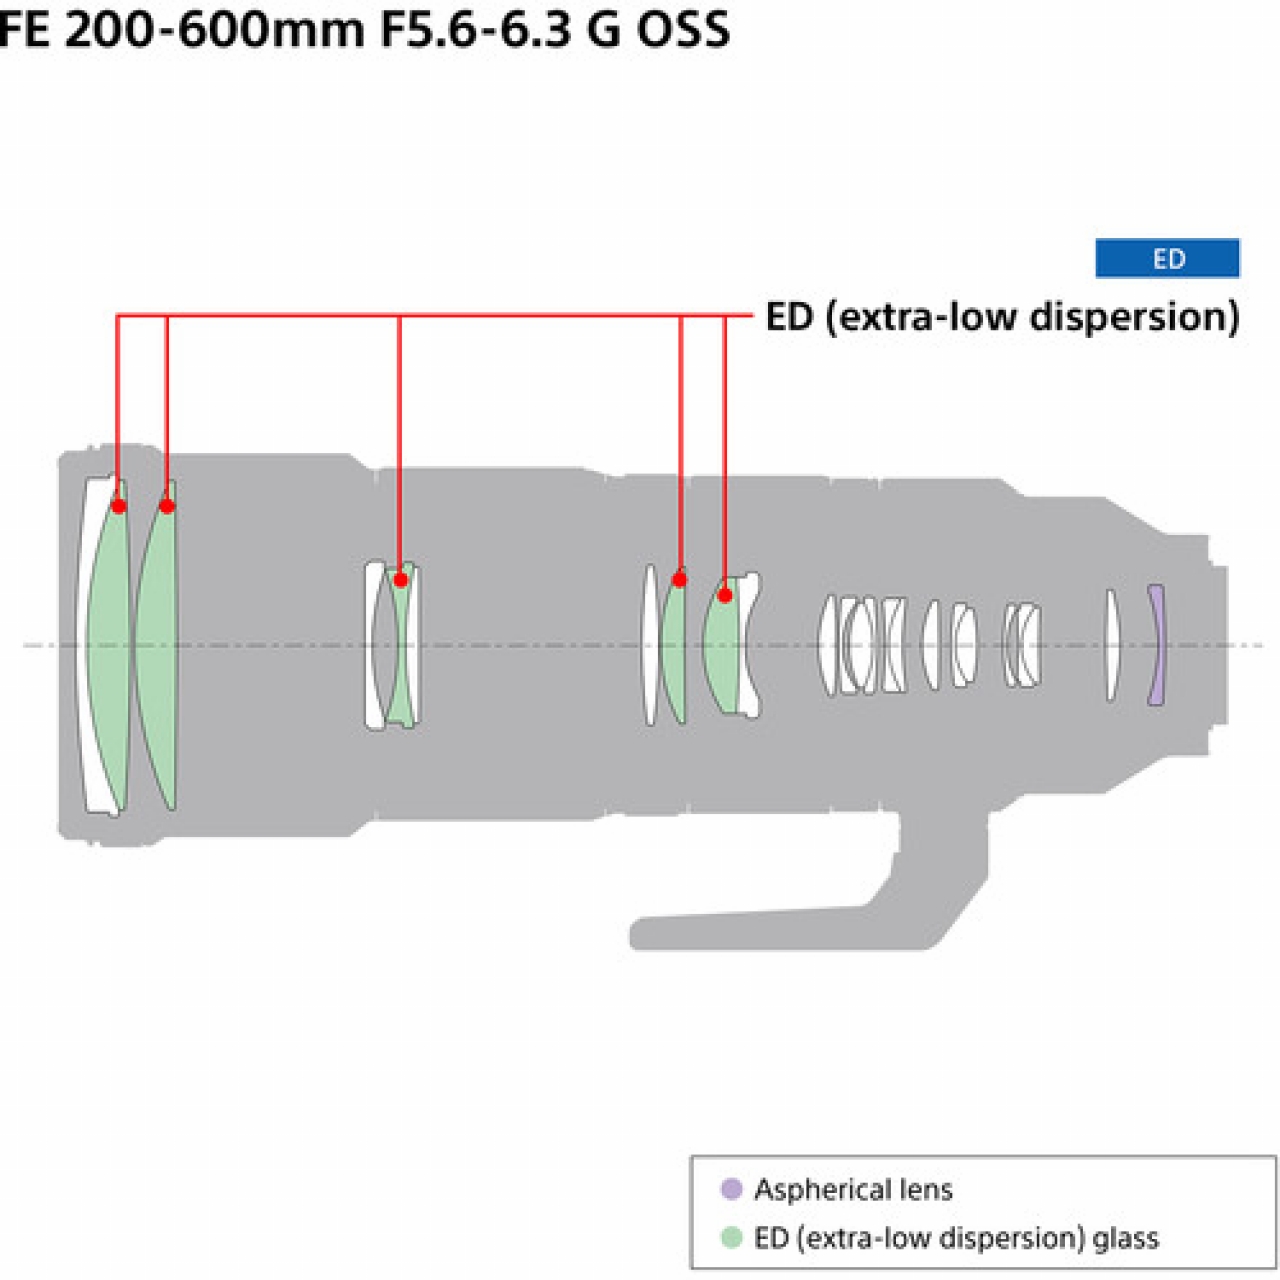 Sony 200 600 FE G OSS f5.6-6.3 Camo Neoprene lens protection